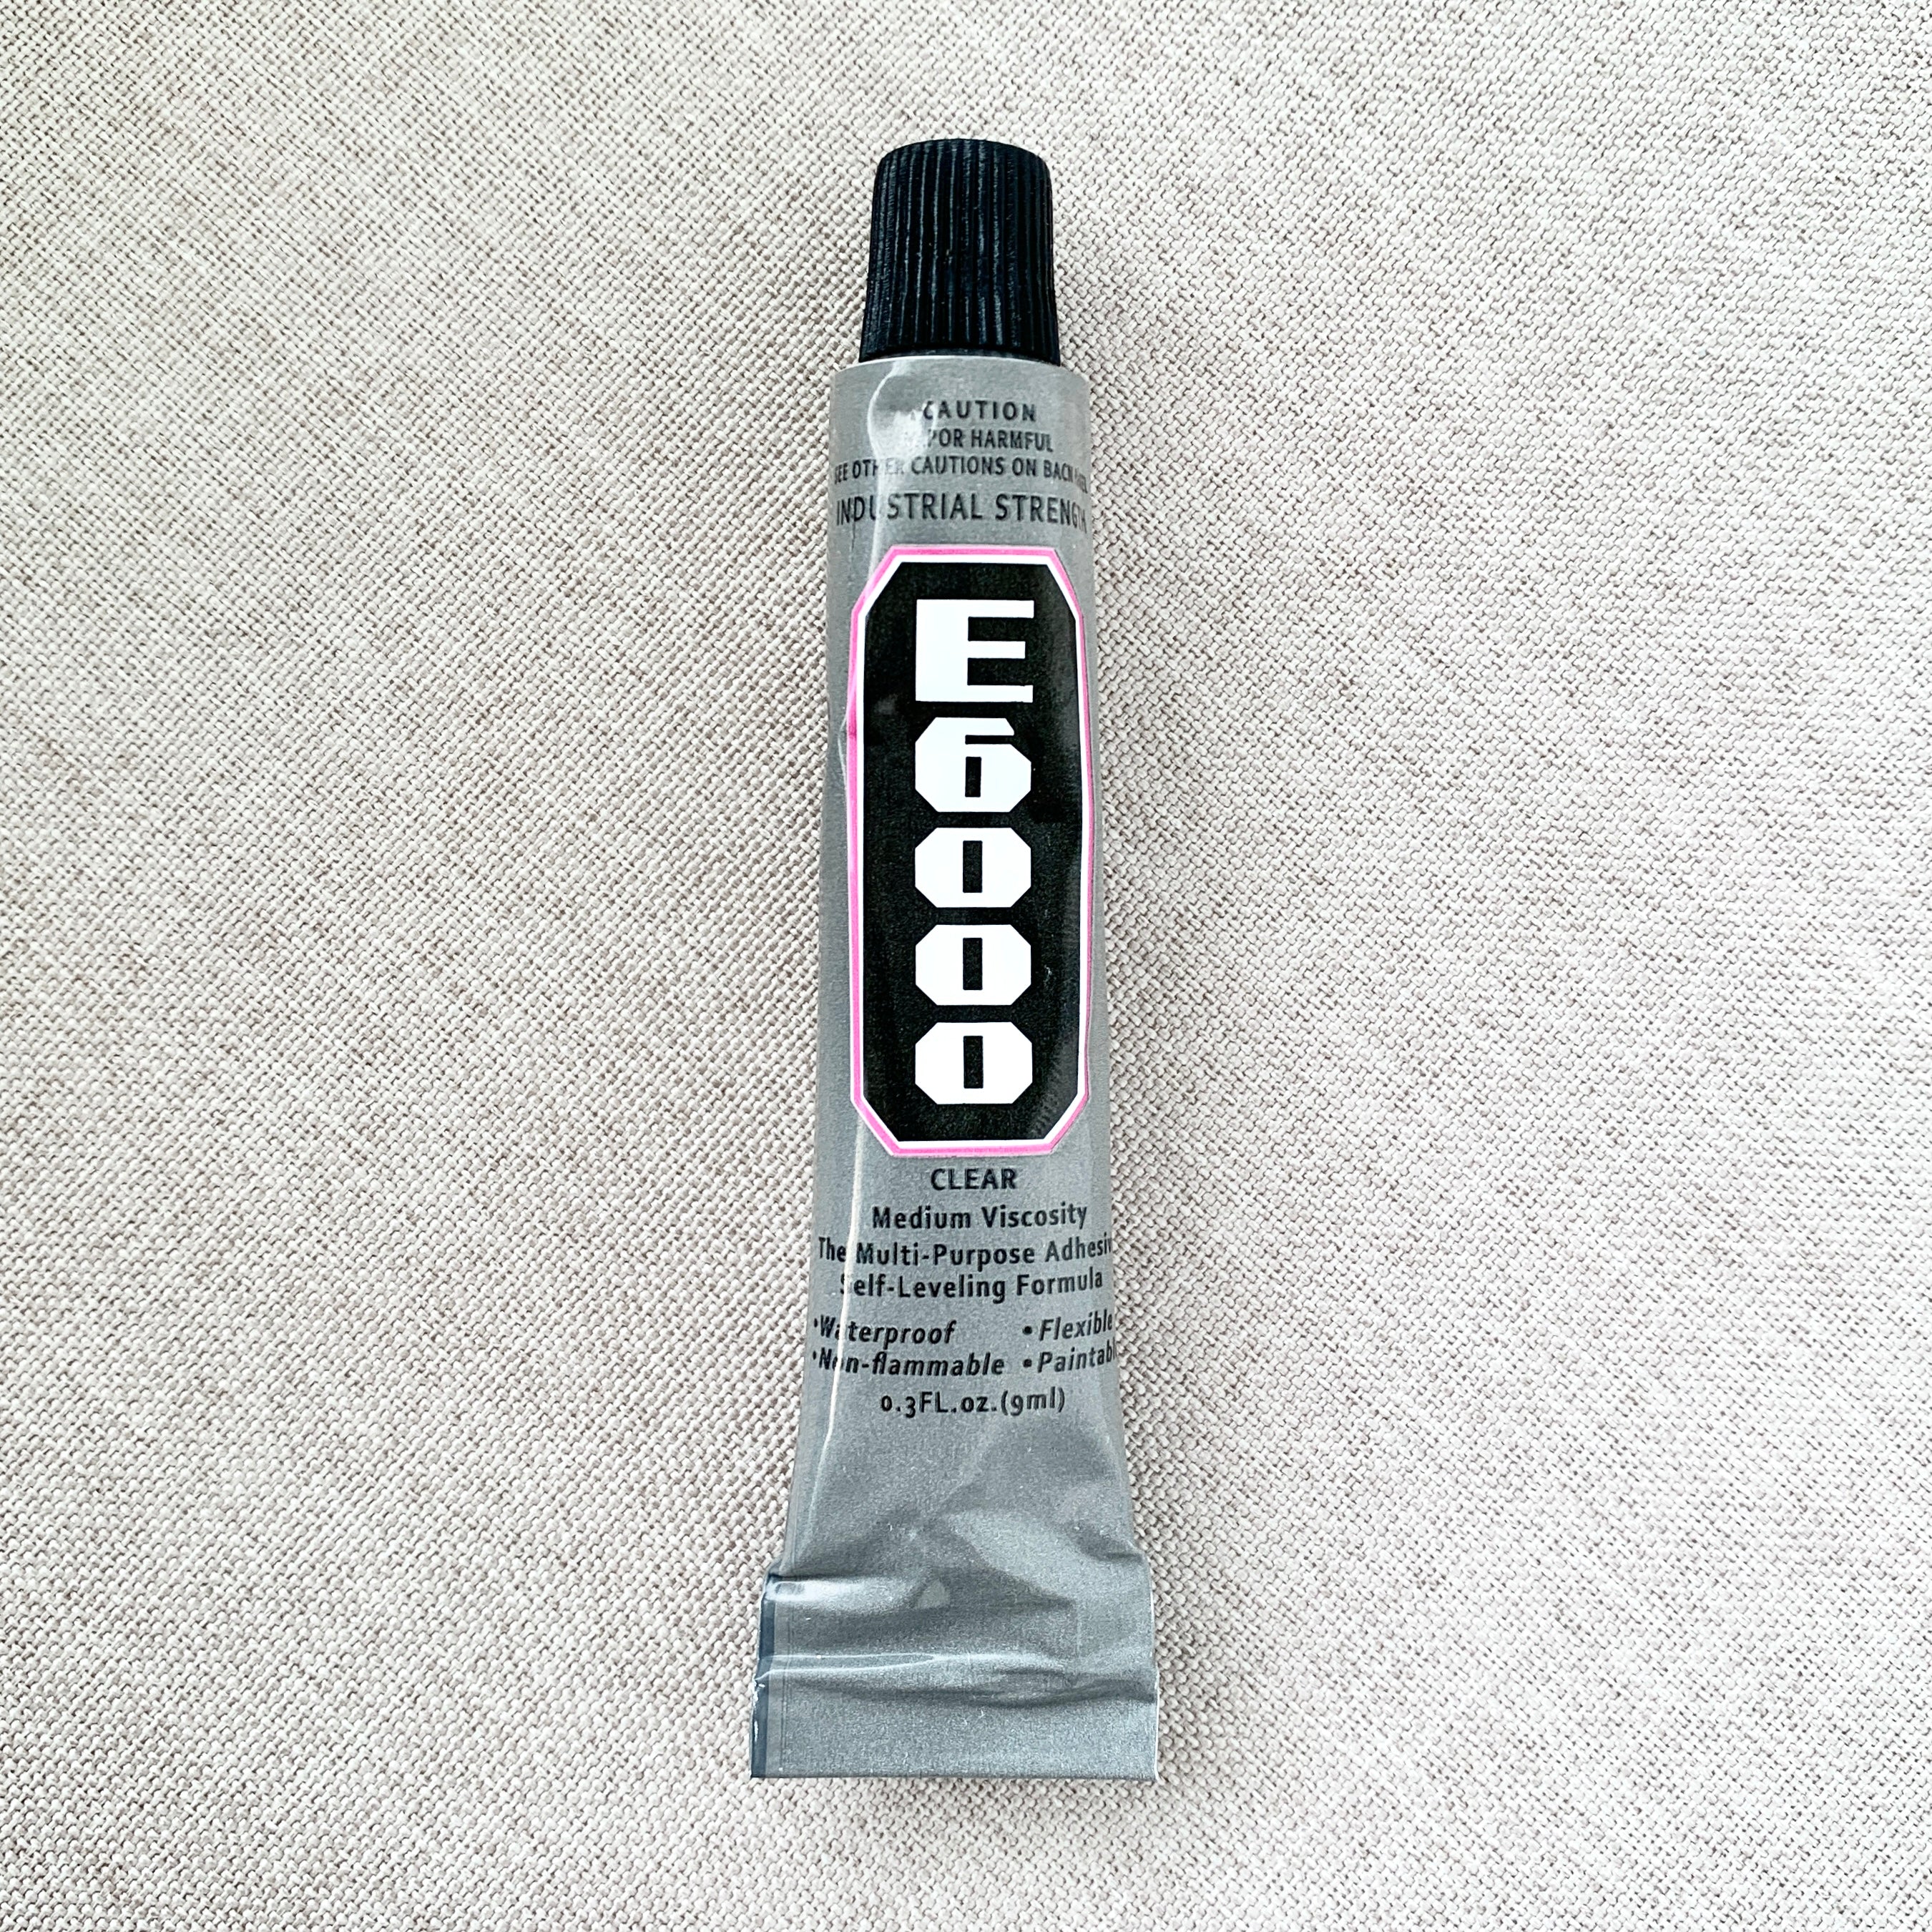 E6000 Glue - 9mL - Craft Glue - Flexible Glue - Glass Bottle Top